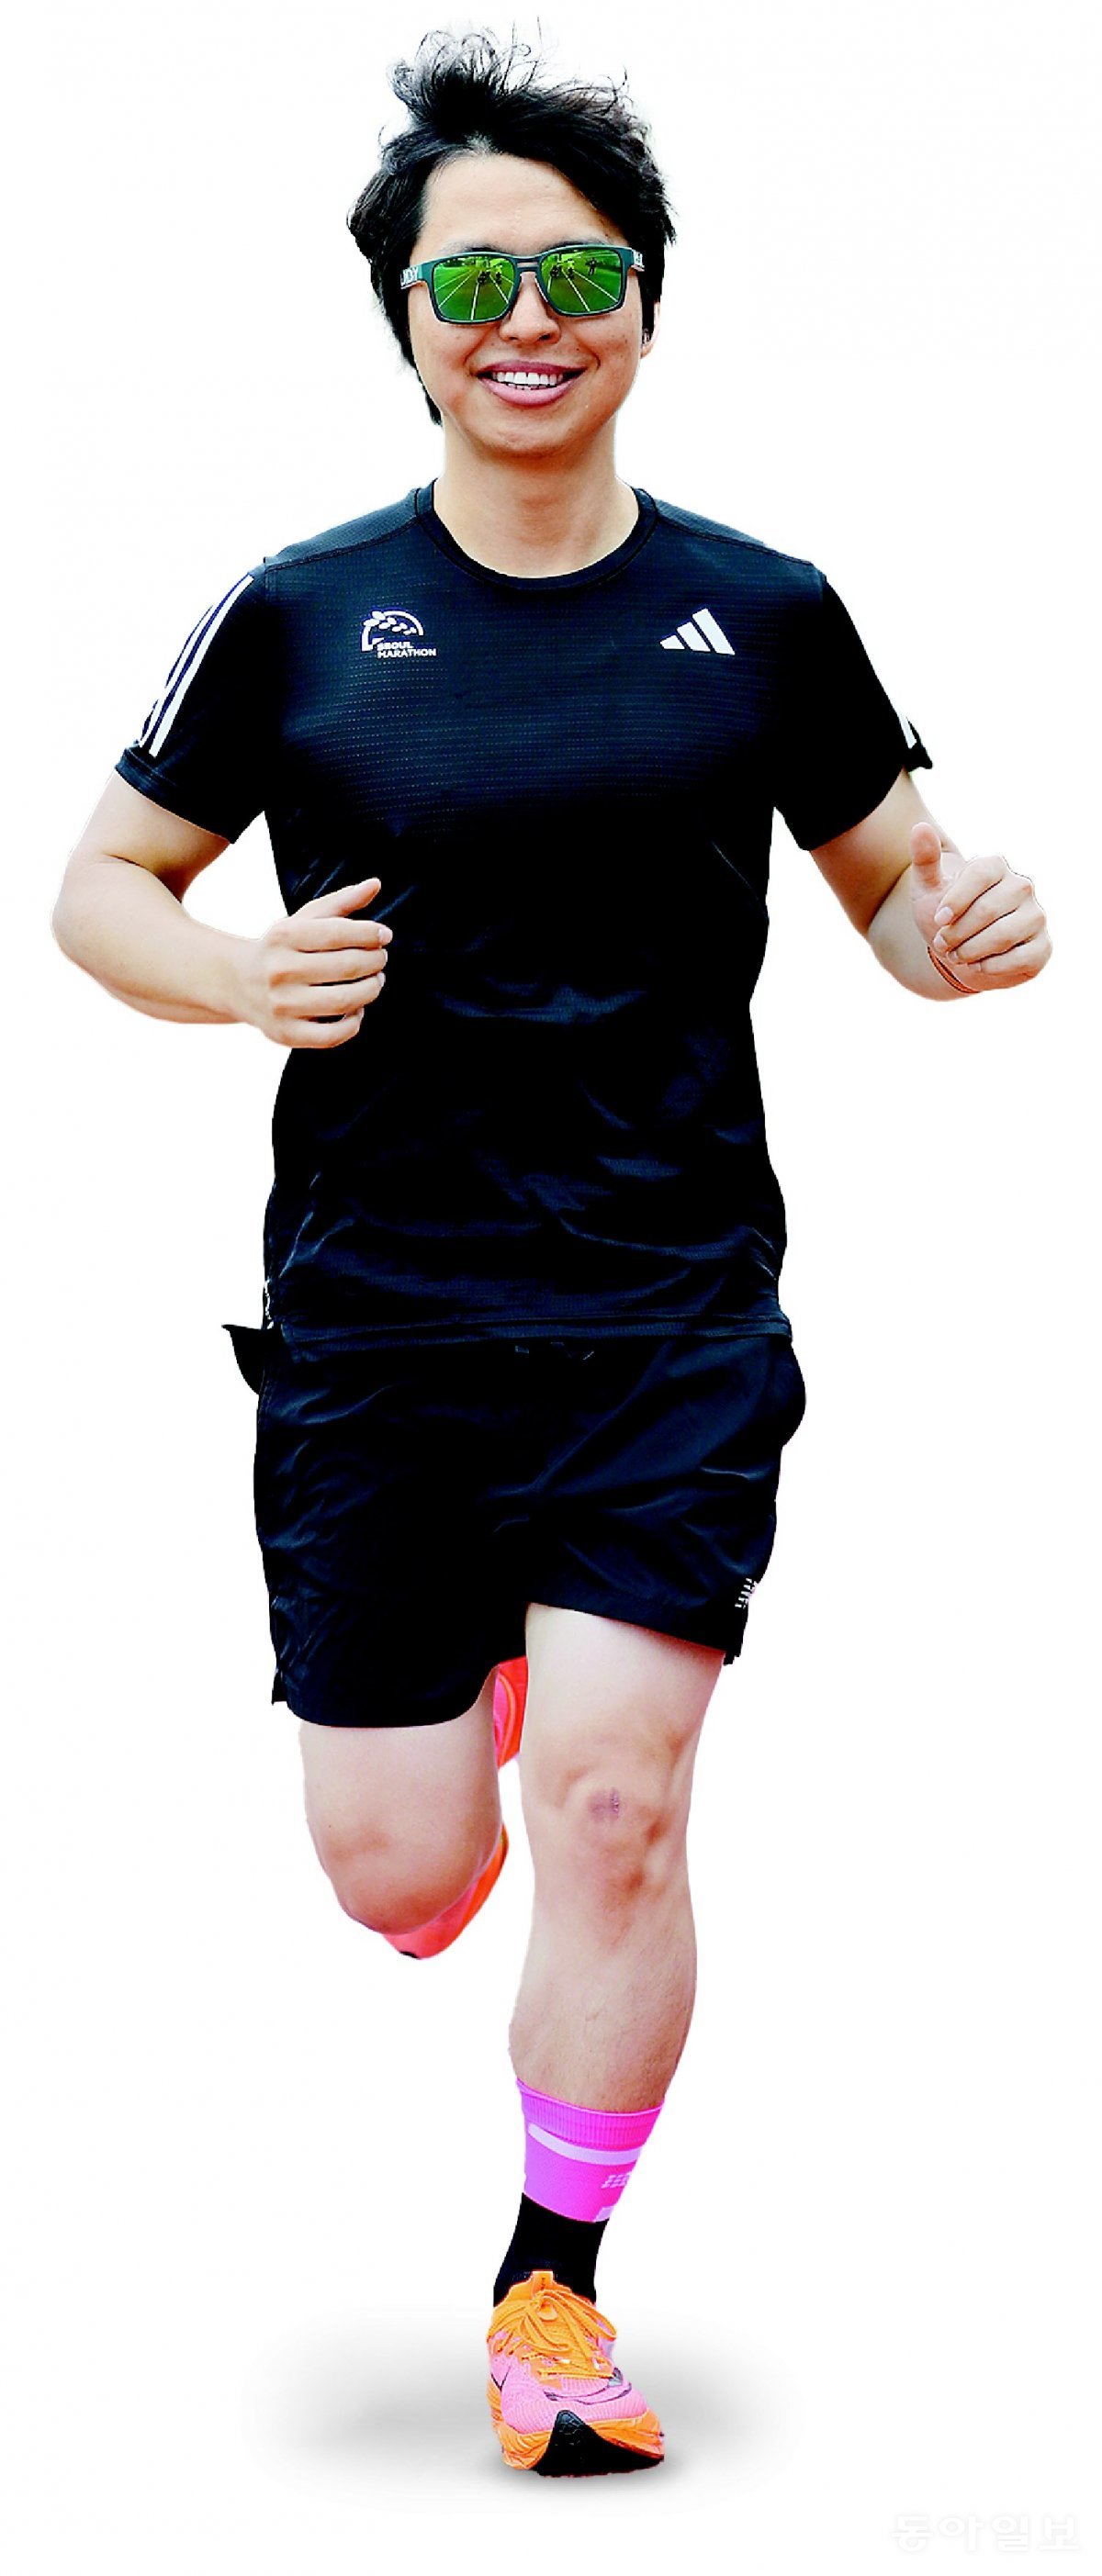 서현민 한양대 구리병원 교수는 체중 감량을 위해 달리기를 시작했다가 마라톤에 빠져들었다. 달리고 4개월 만에 체중이 9kg 빠지면서 건강 체질로 돌아왔다. 서 교수가 한양대 운동장을 달리고 있다. 안철민 기자 acm08@donga.com